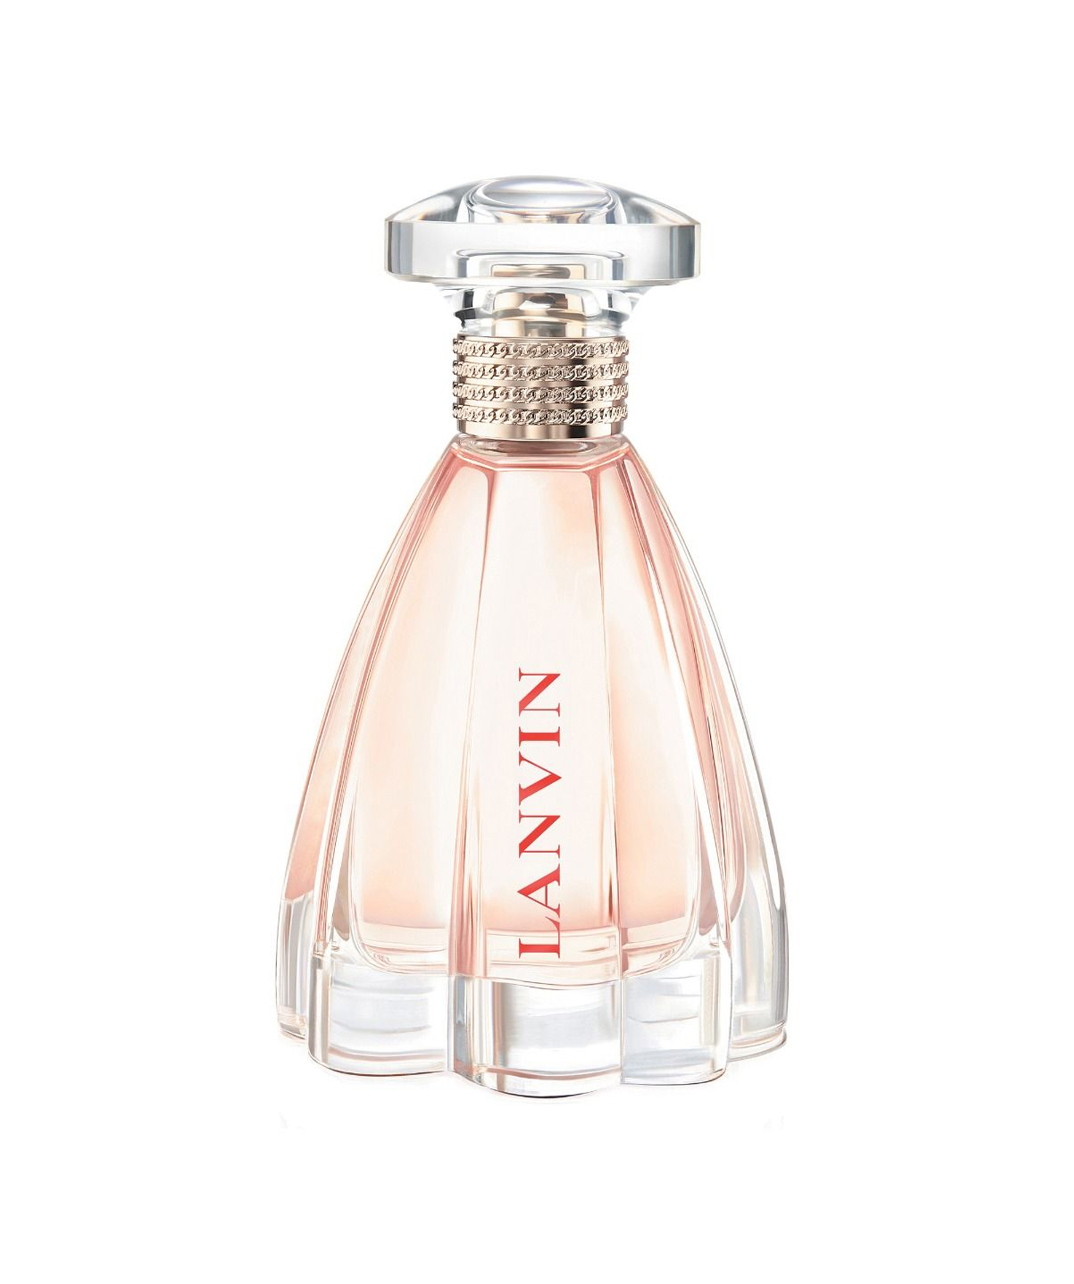 Perfume «Lanvin» Modern Princess, for women, 30 ml